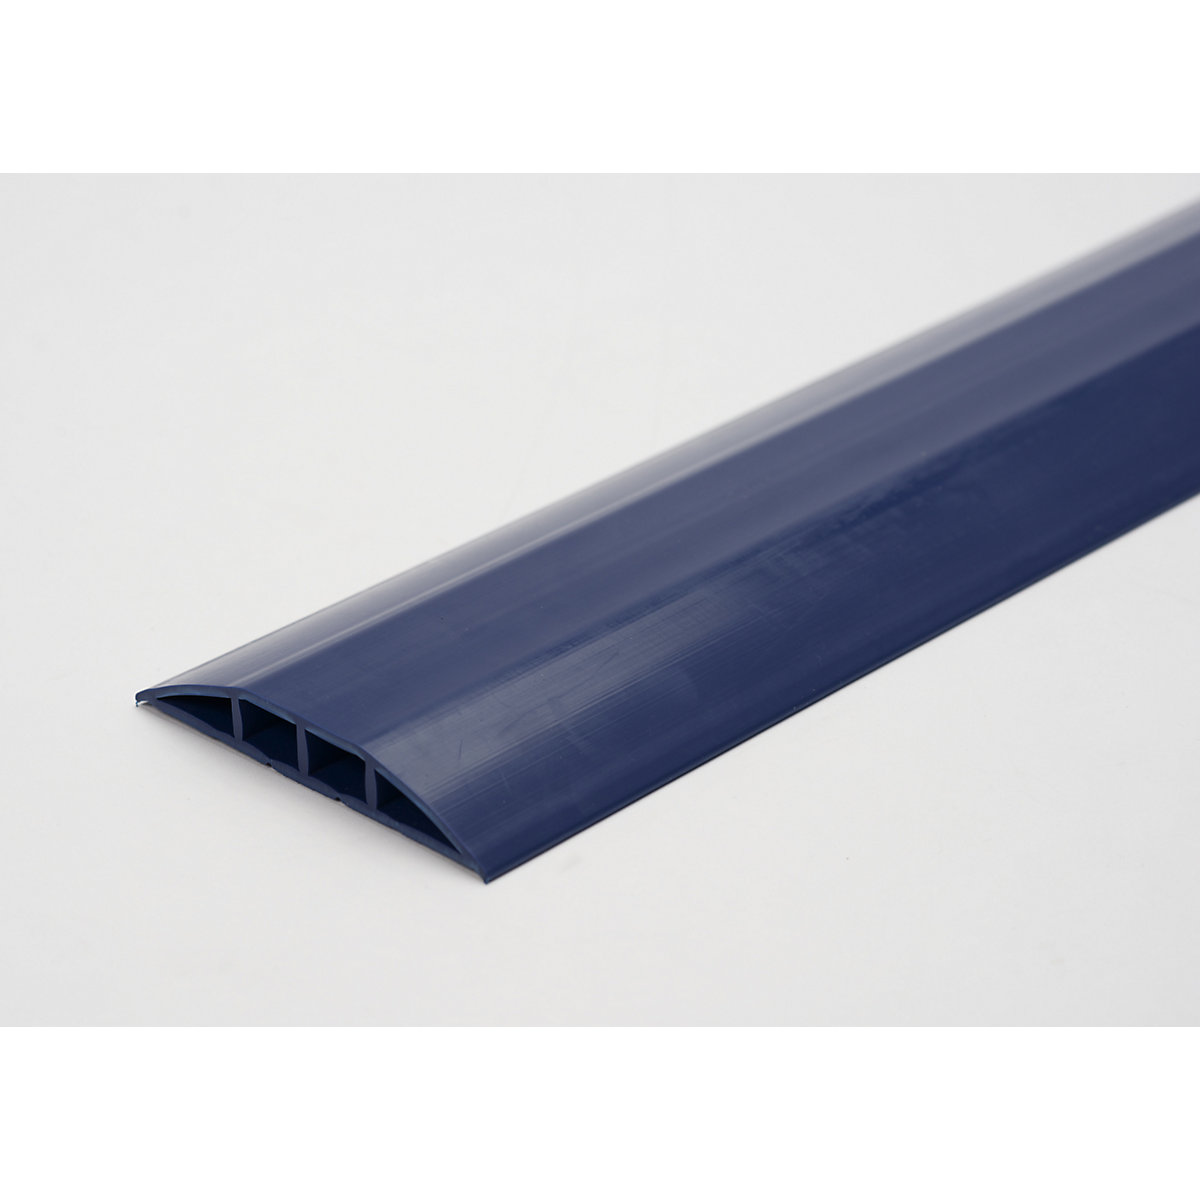 Plastični kabelski most, za kabele i crijeva Ø do 7,5 mm, u plavoj boji, 2 komore, dužina 1,5 m-2